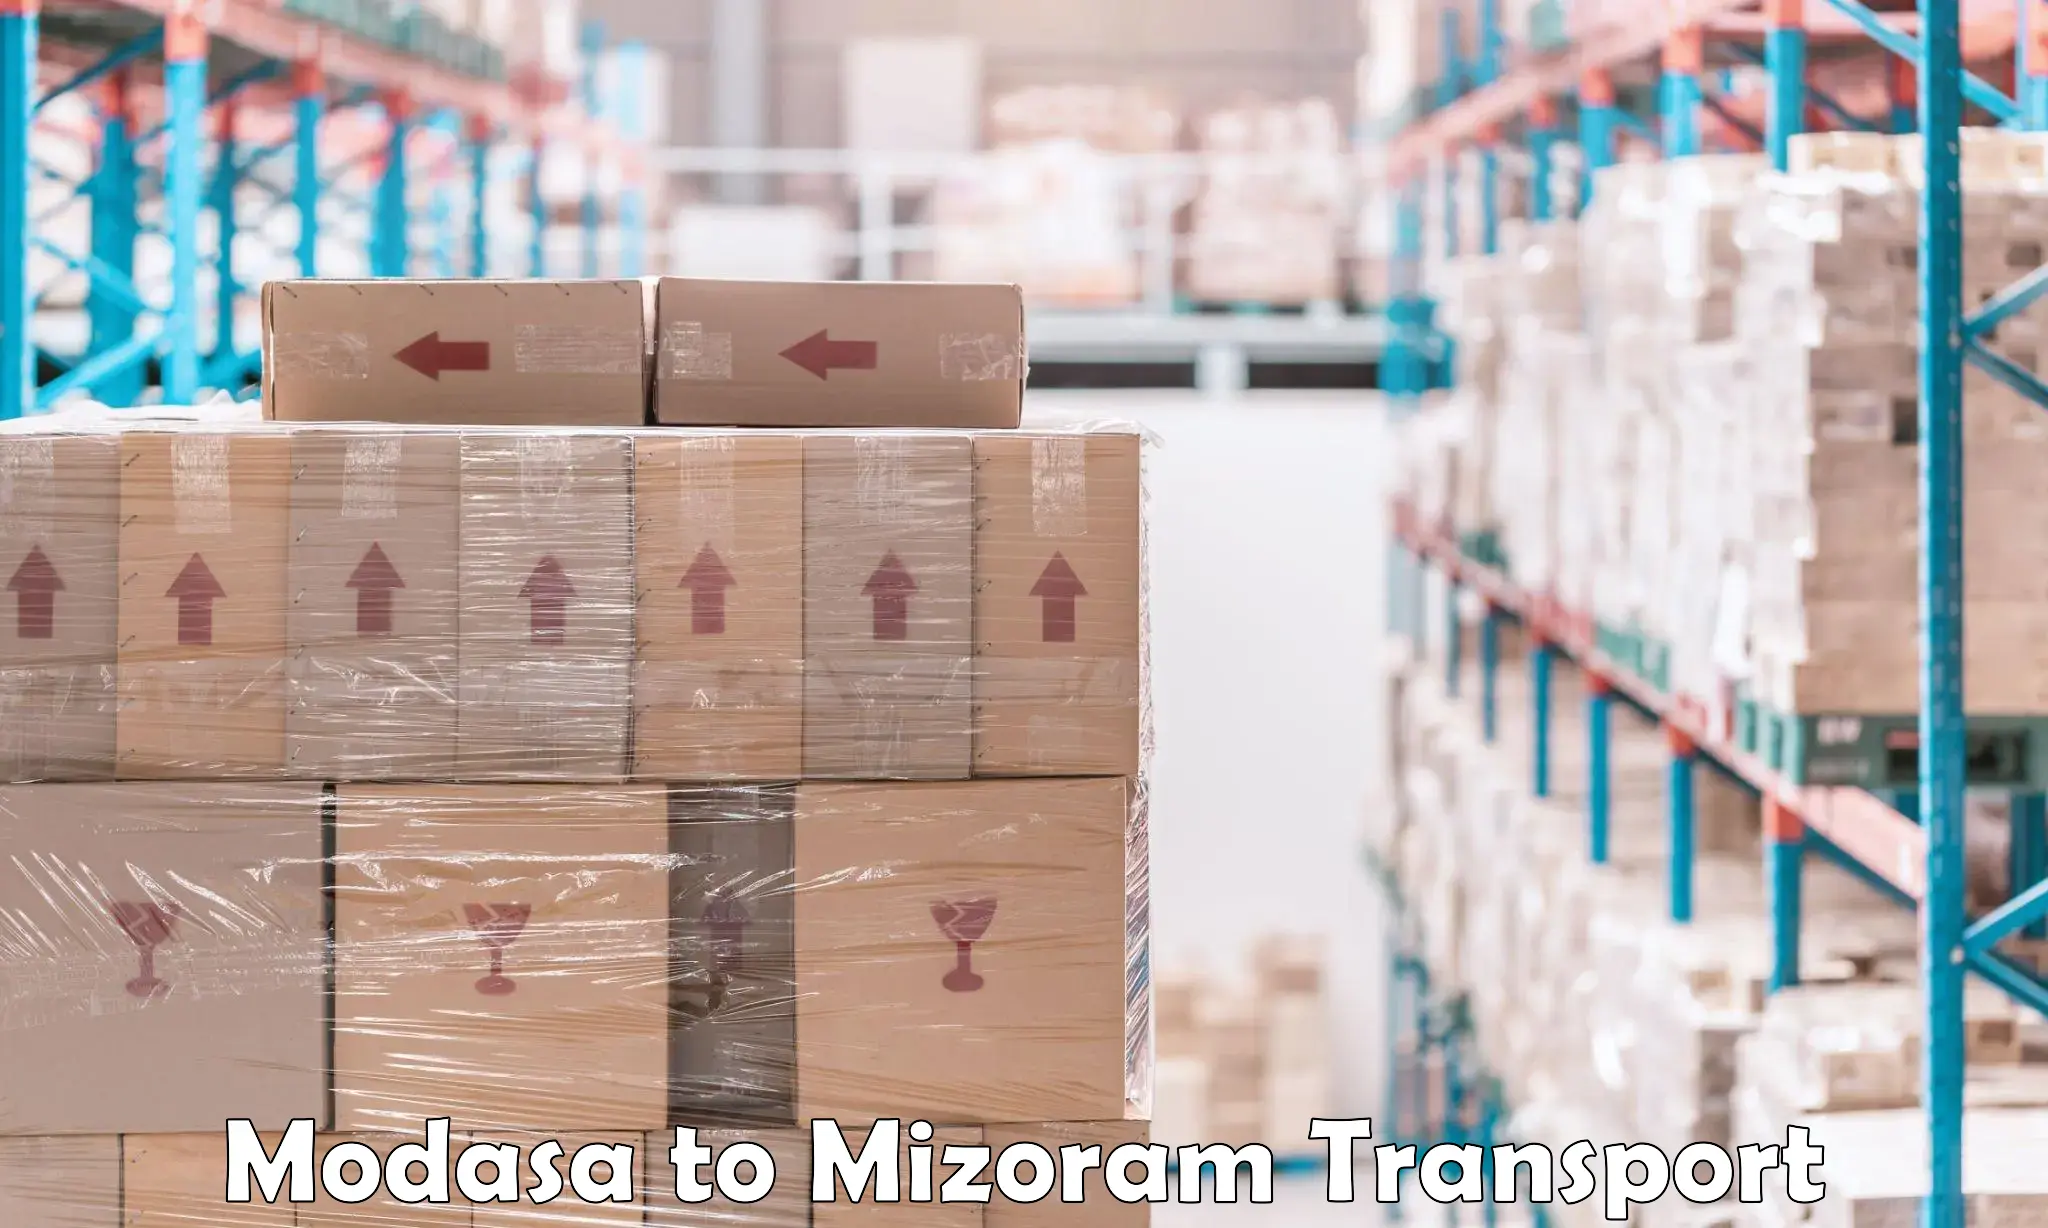 Nearby transport service Modasa to Mizoram